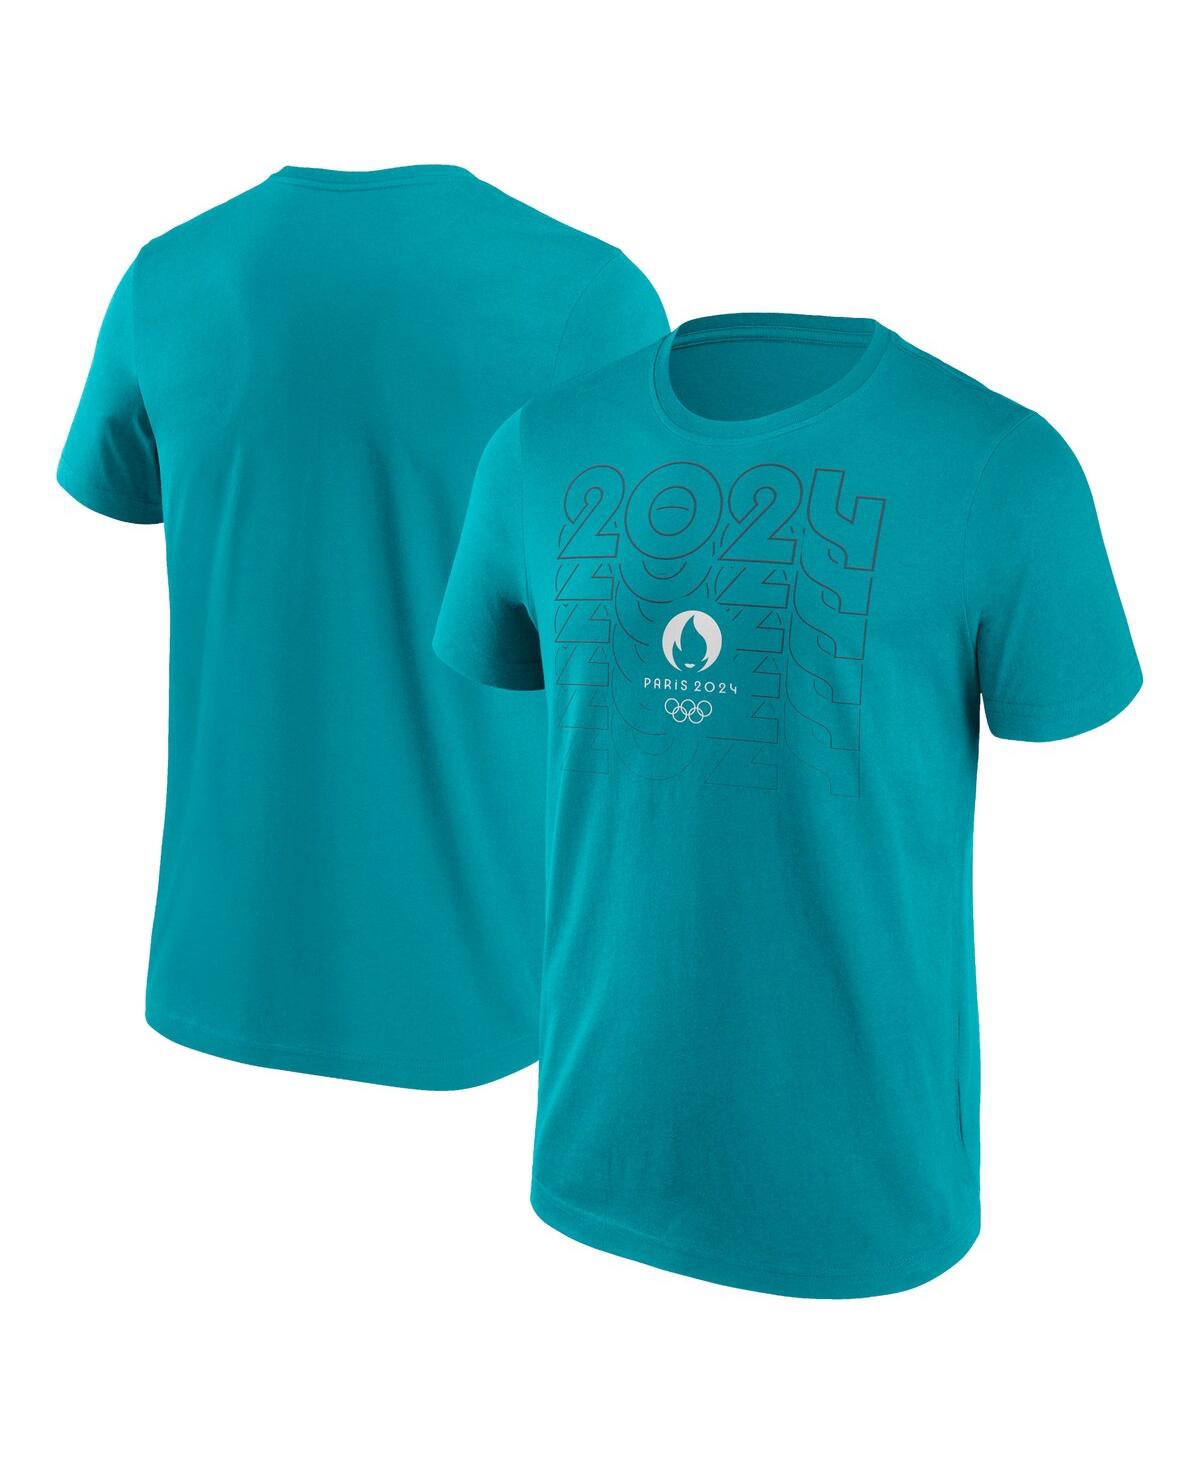 Shop Fanatics Branded Men's Aqua Paris 2024 Repeat Outline T-shirt